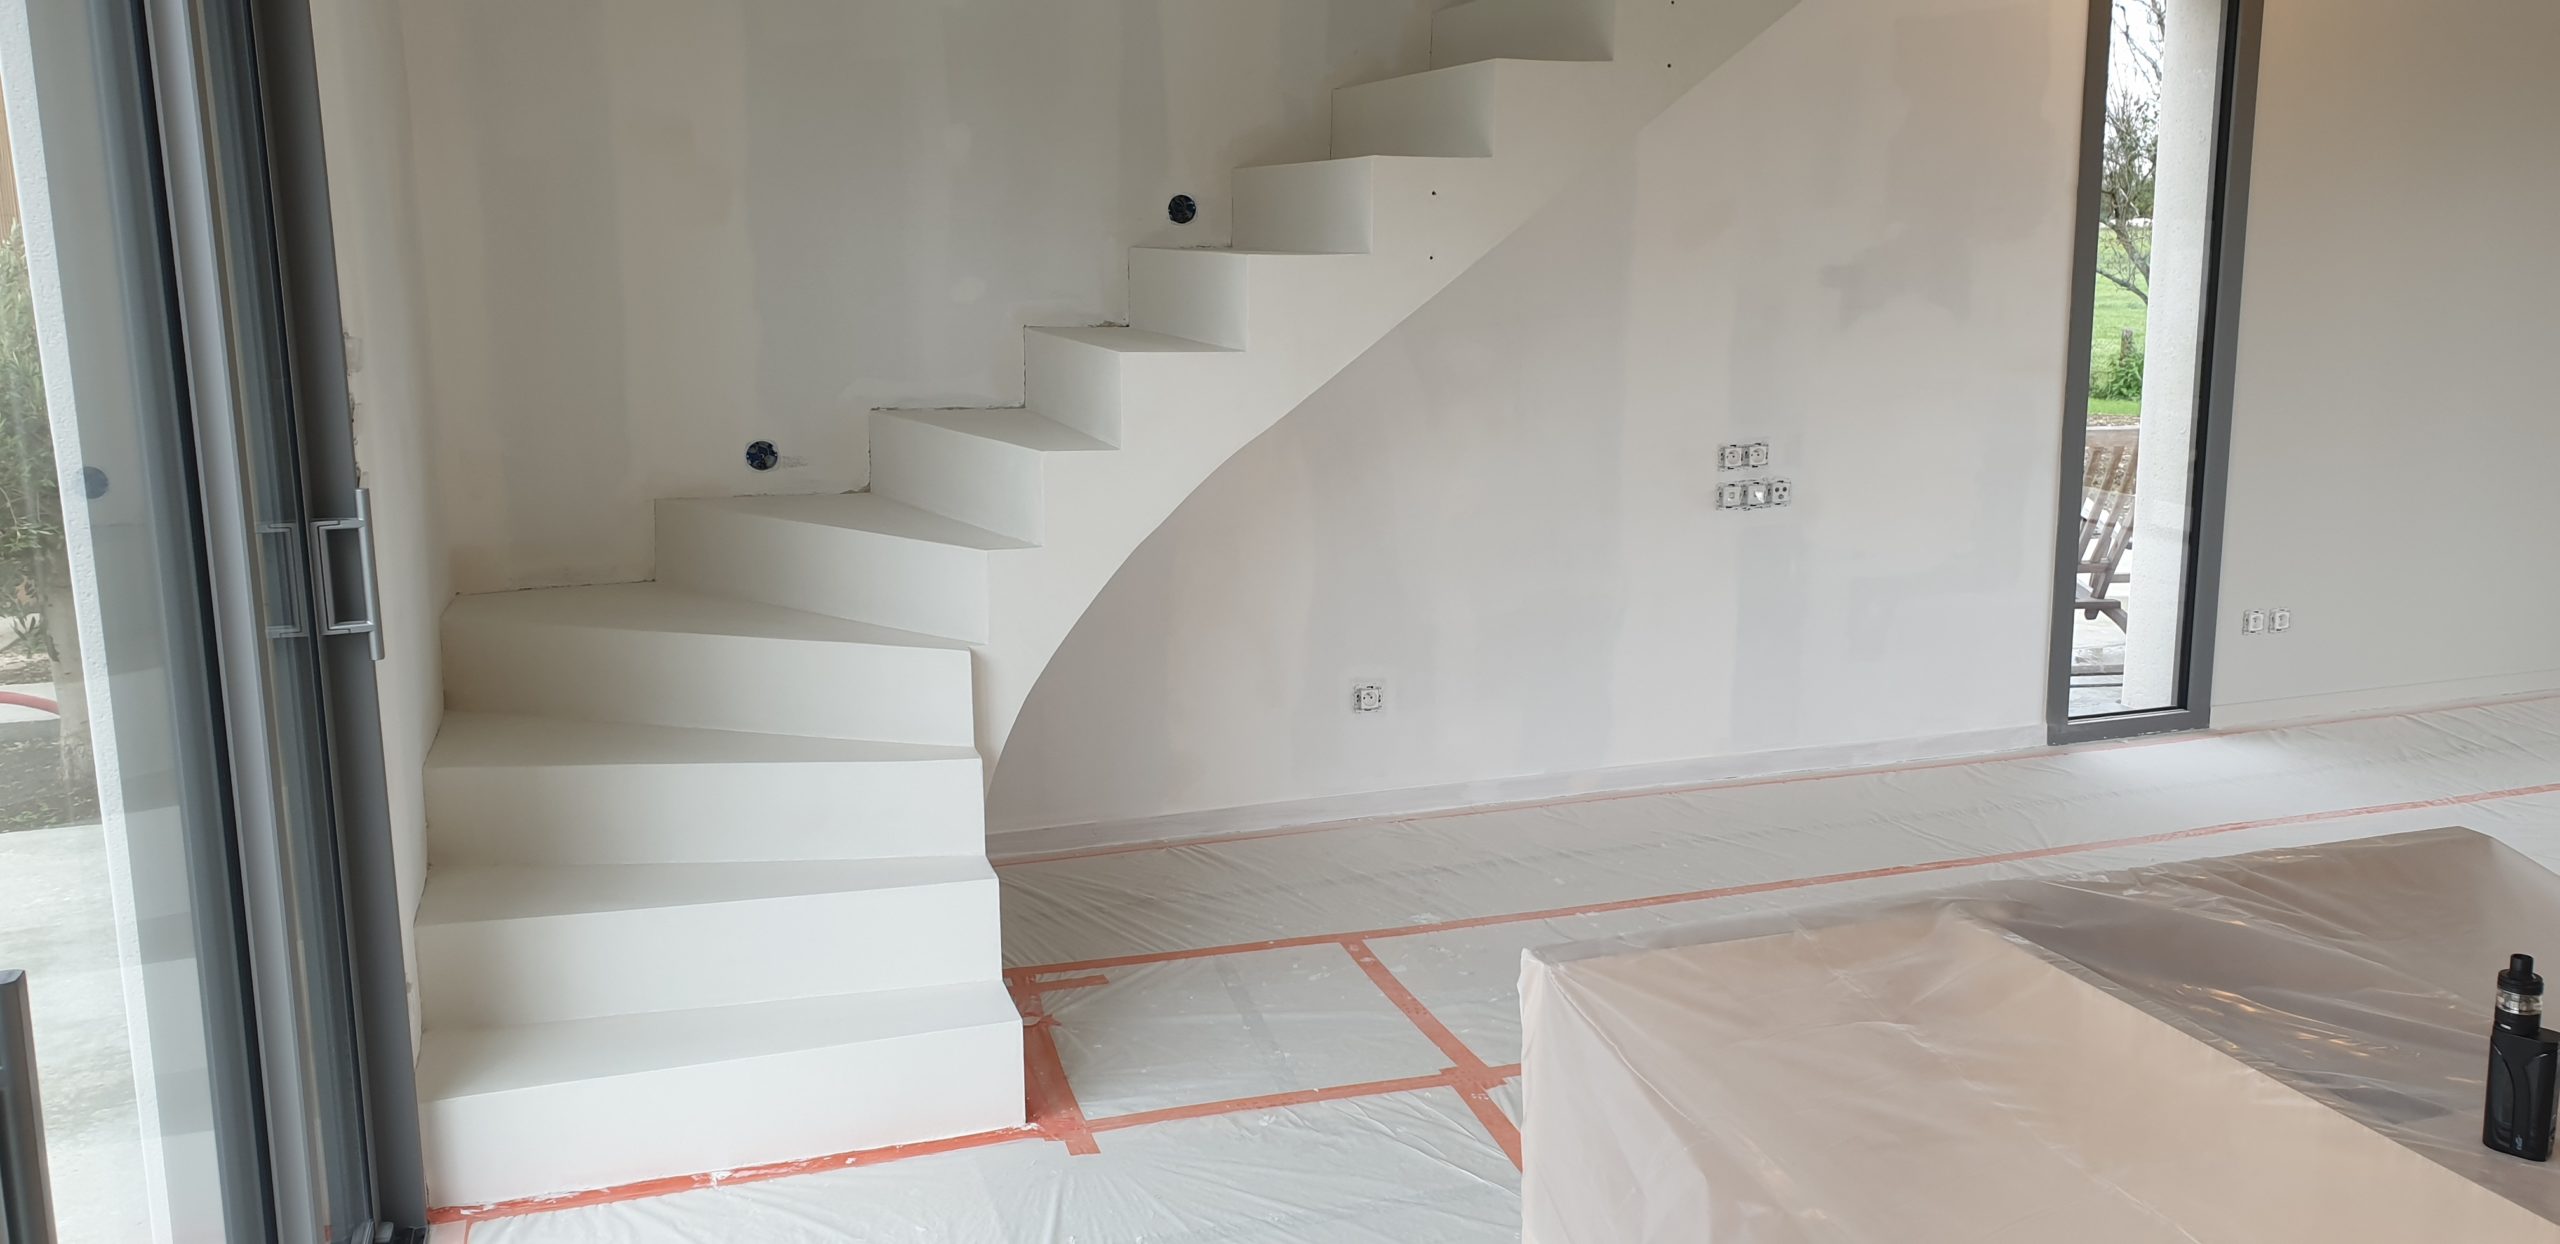 Escalier coulé en béton brut puis revêtement en béton ciré blanc dans une maison en construction